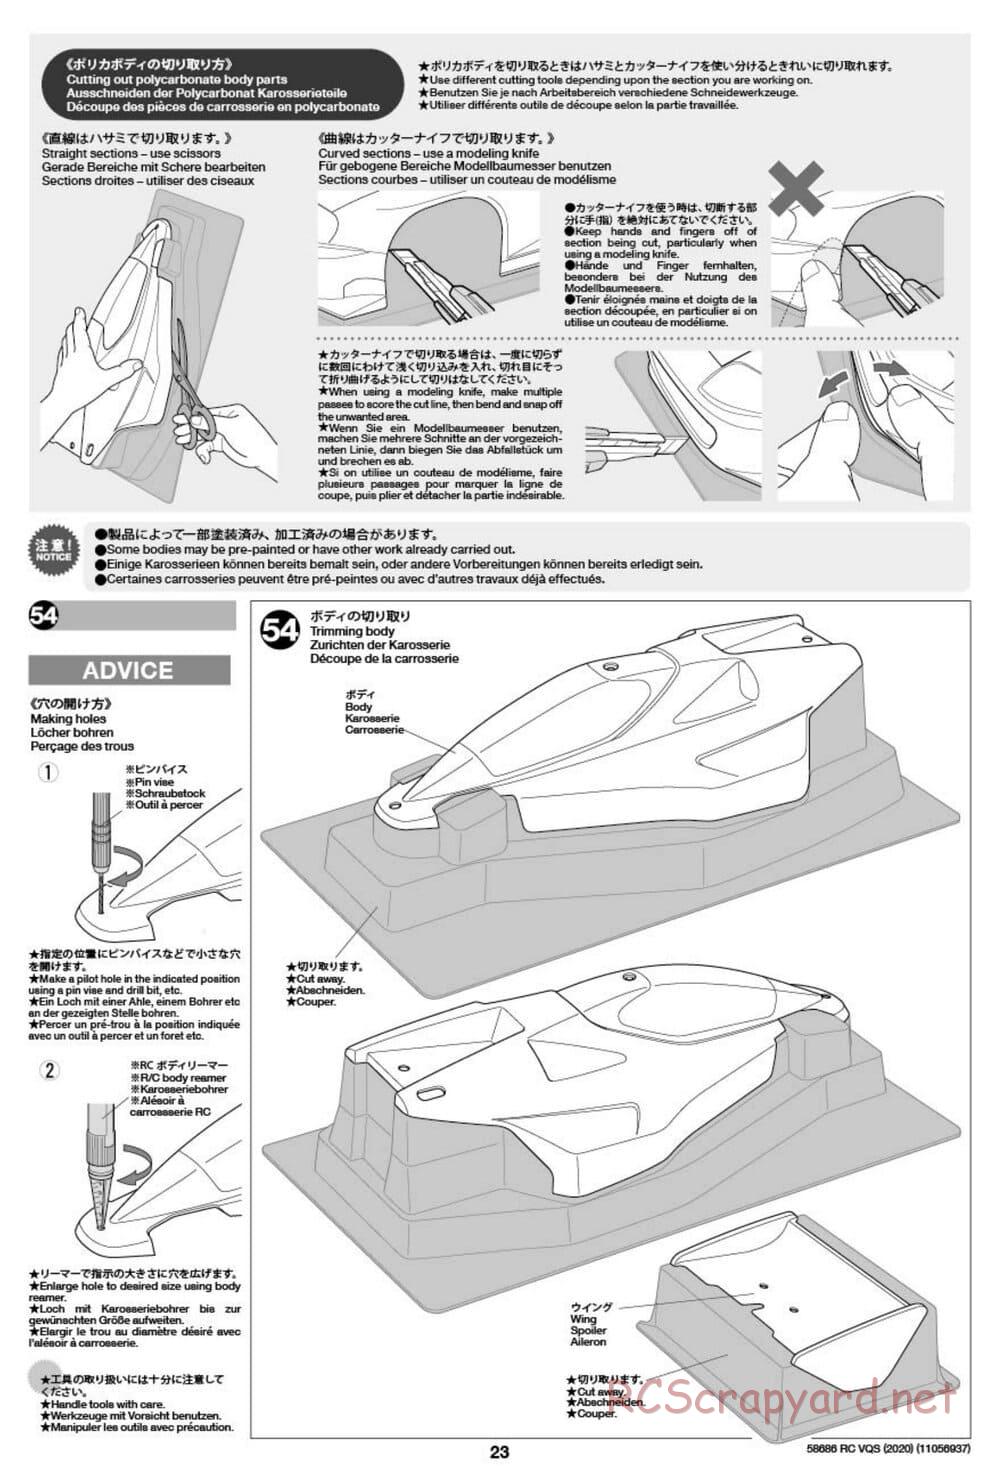 Tamiya - VQS (2020) - AV Chassis - Manual - Page 23